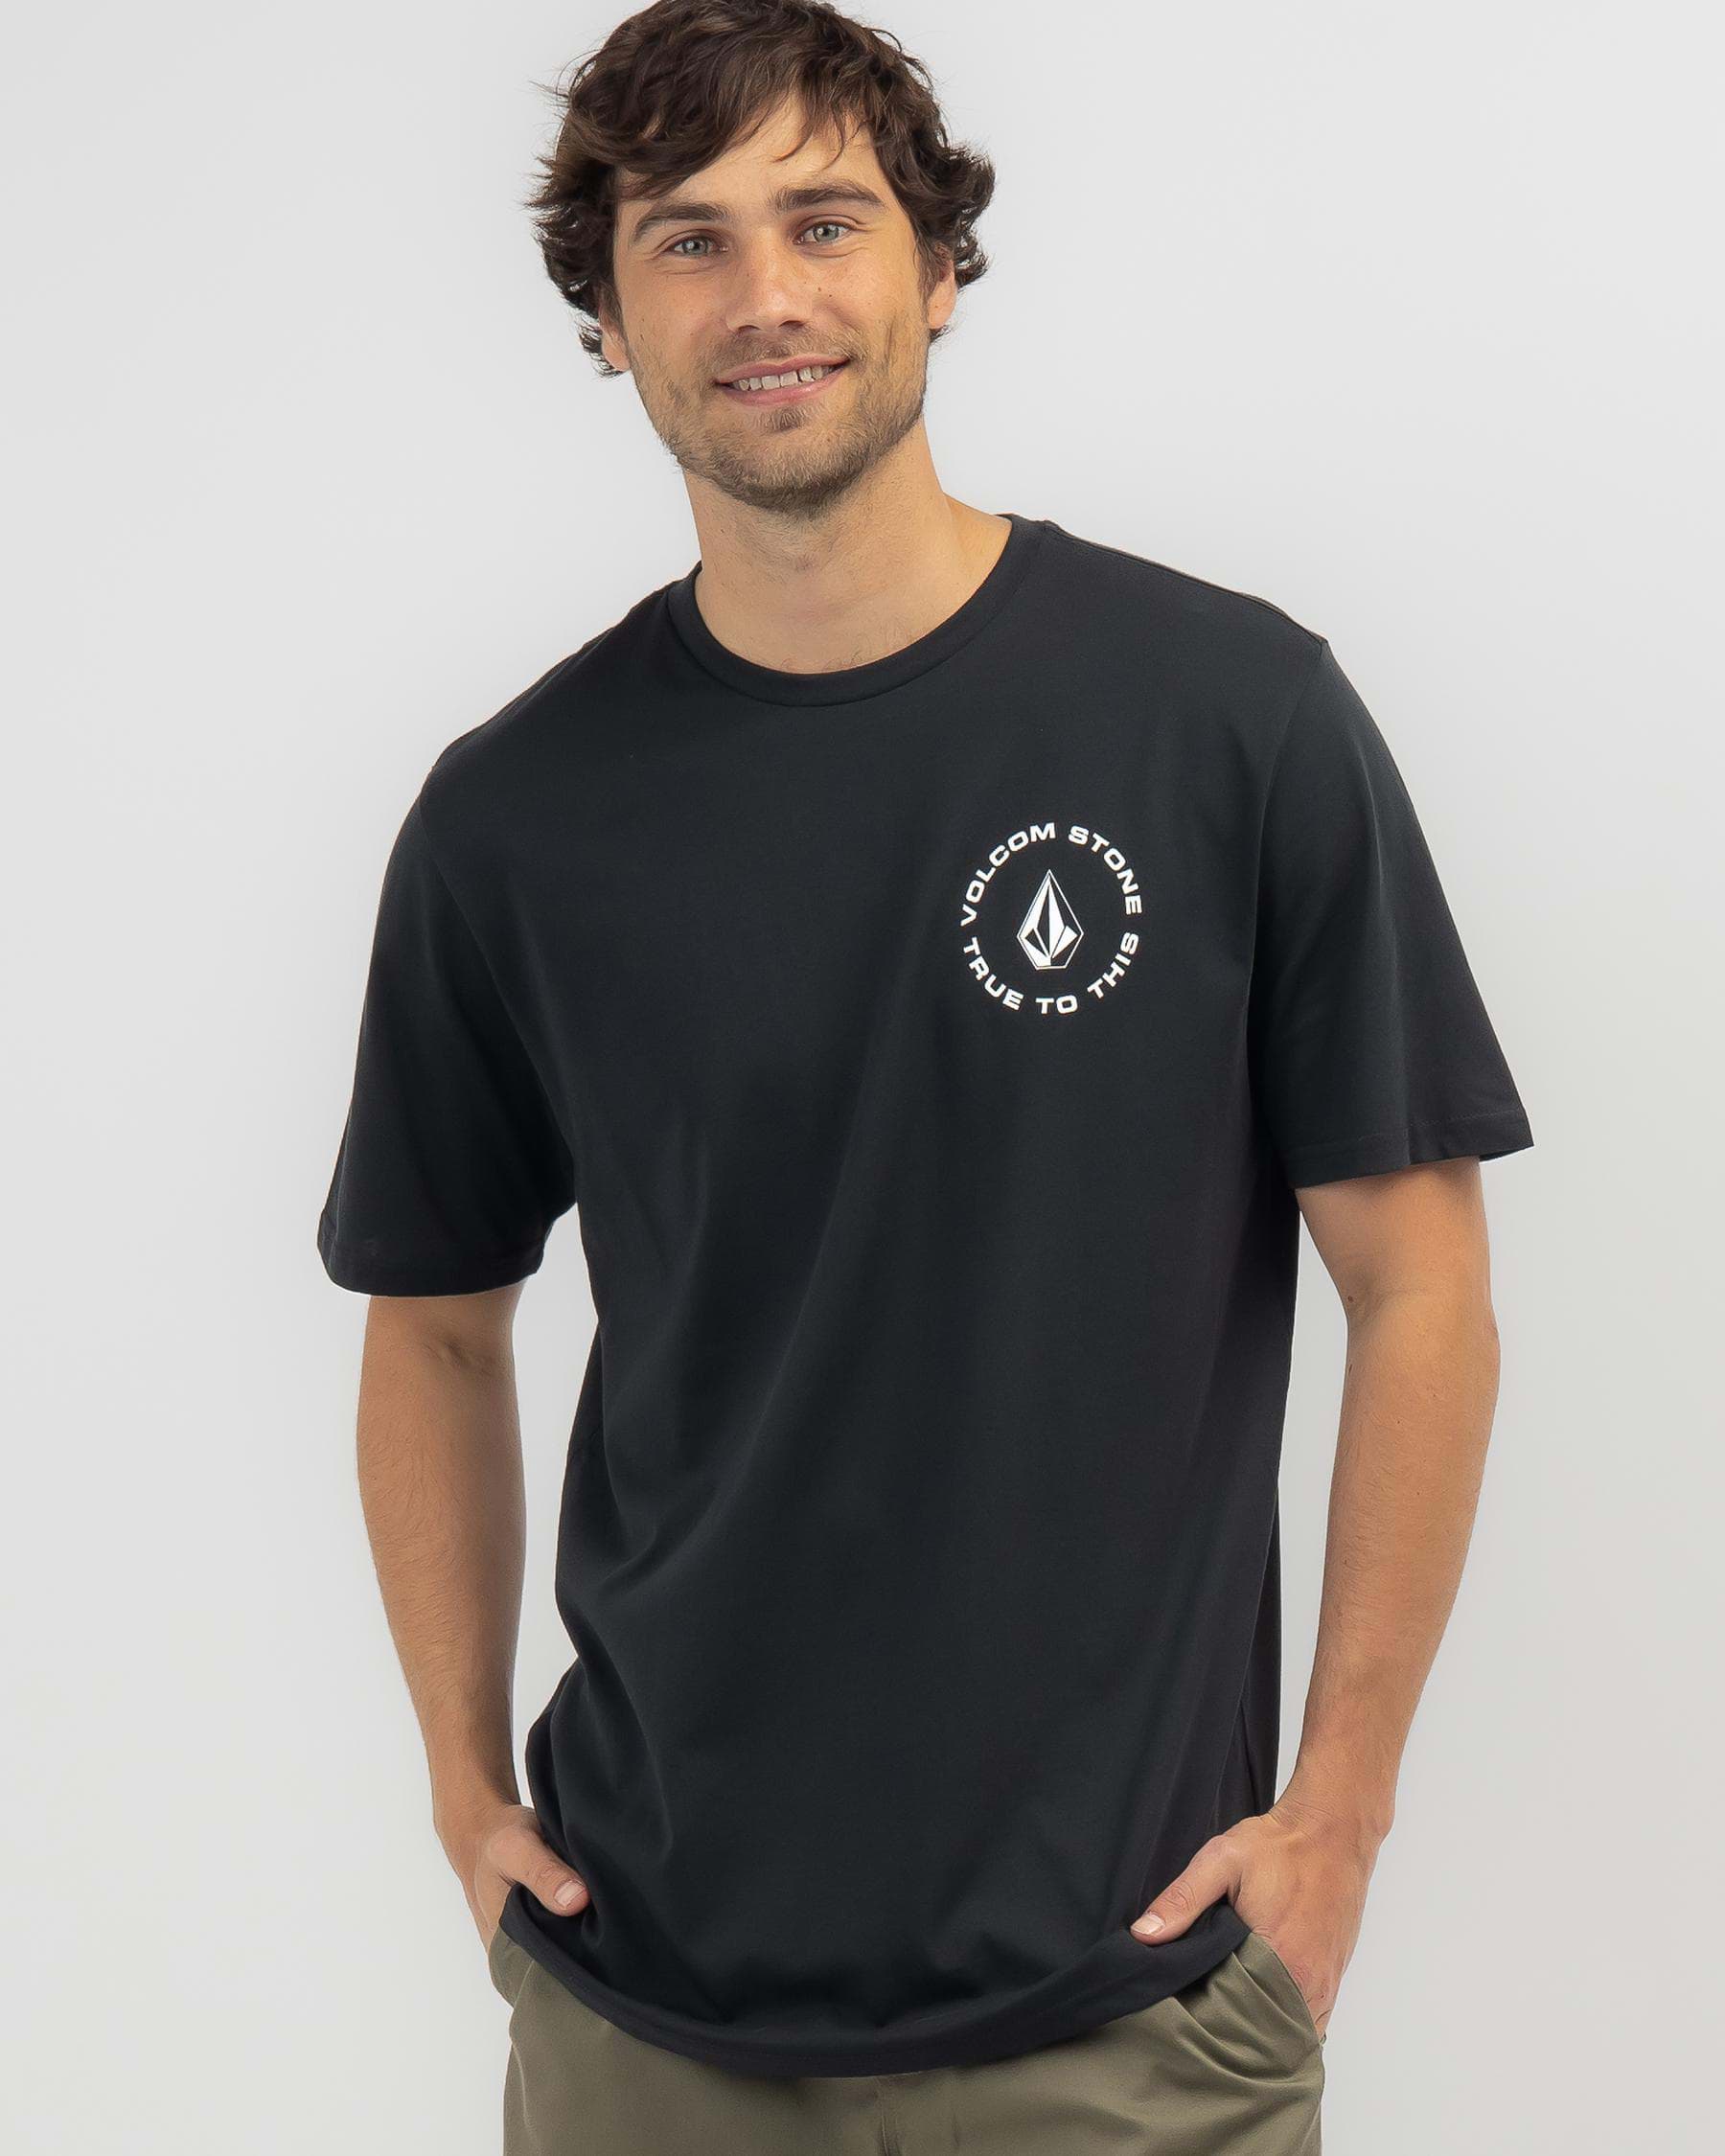 Volcom Mangler T-Shirt In Black/white - Fast Shipping & Easy Returns ...